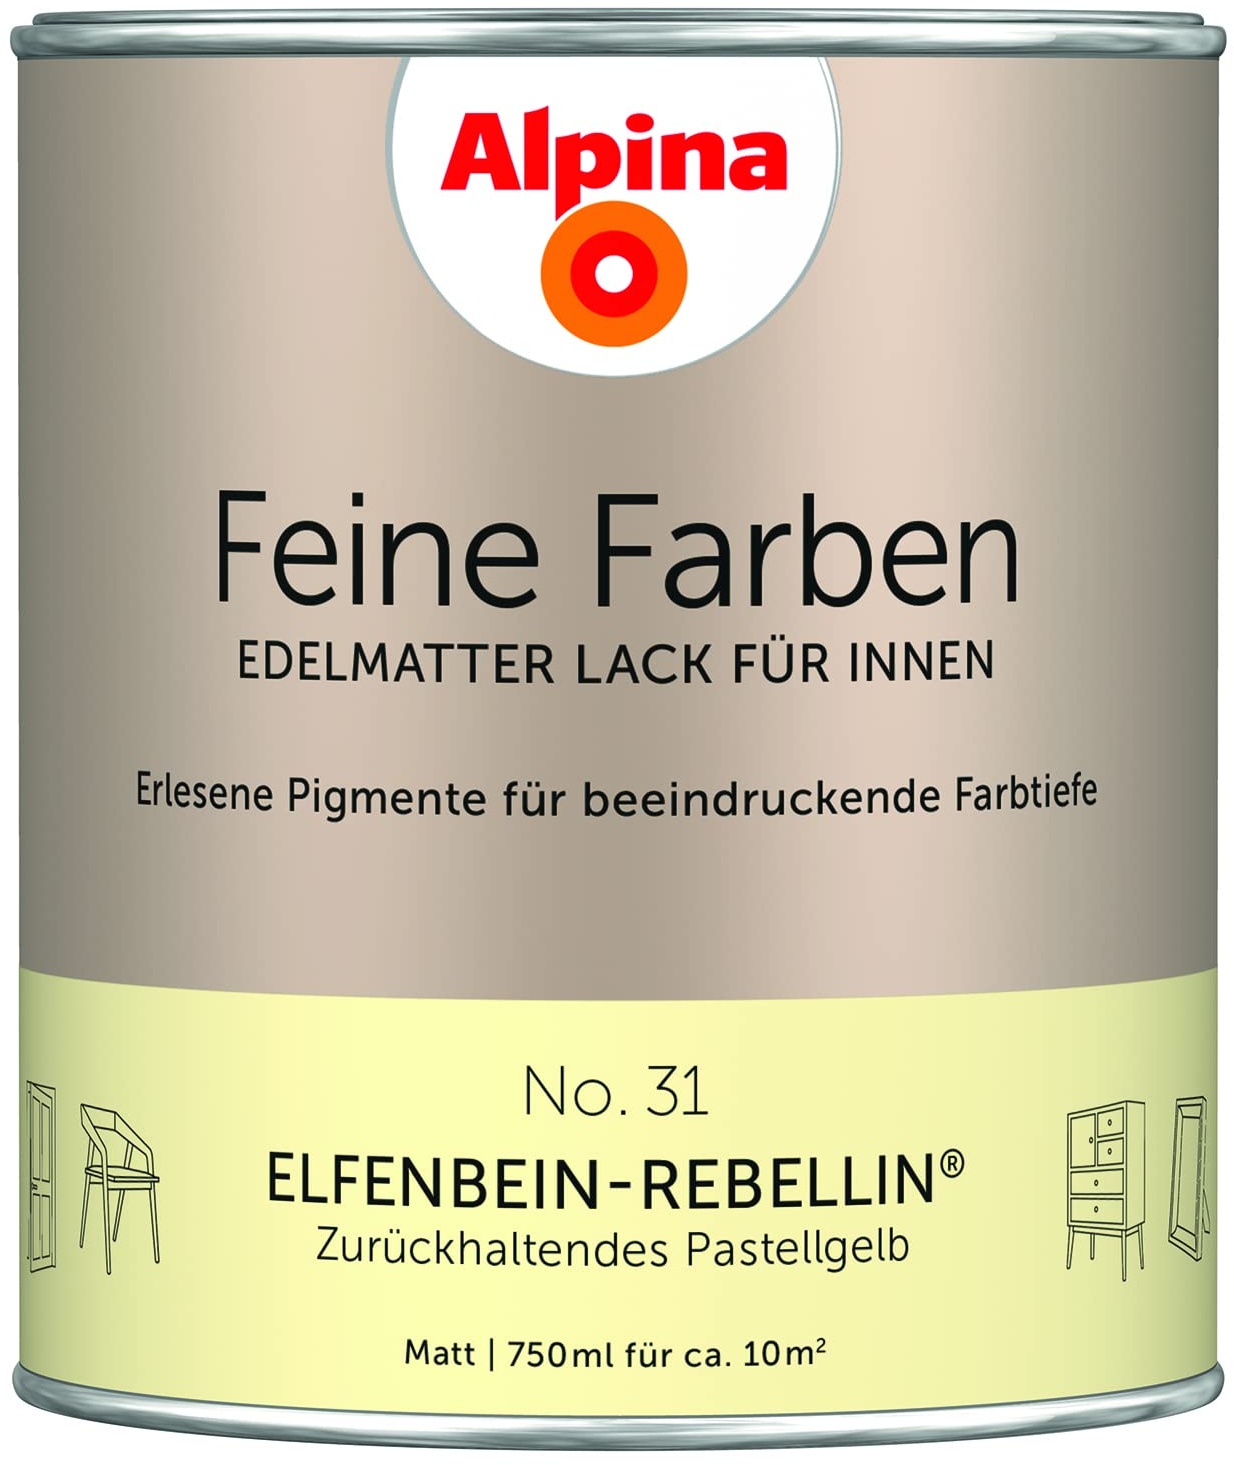 Alpina Feine Farben Lack No. 31 Elfenbein-Rebellin® edelmatt 750ml - Zurückhaltendes Pastellgelb